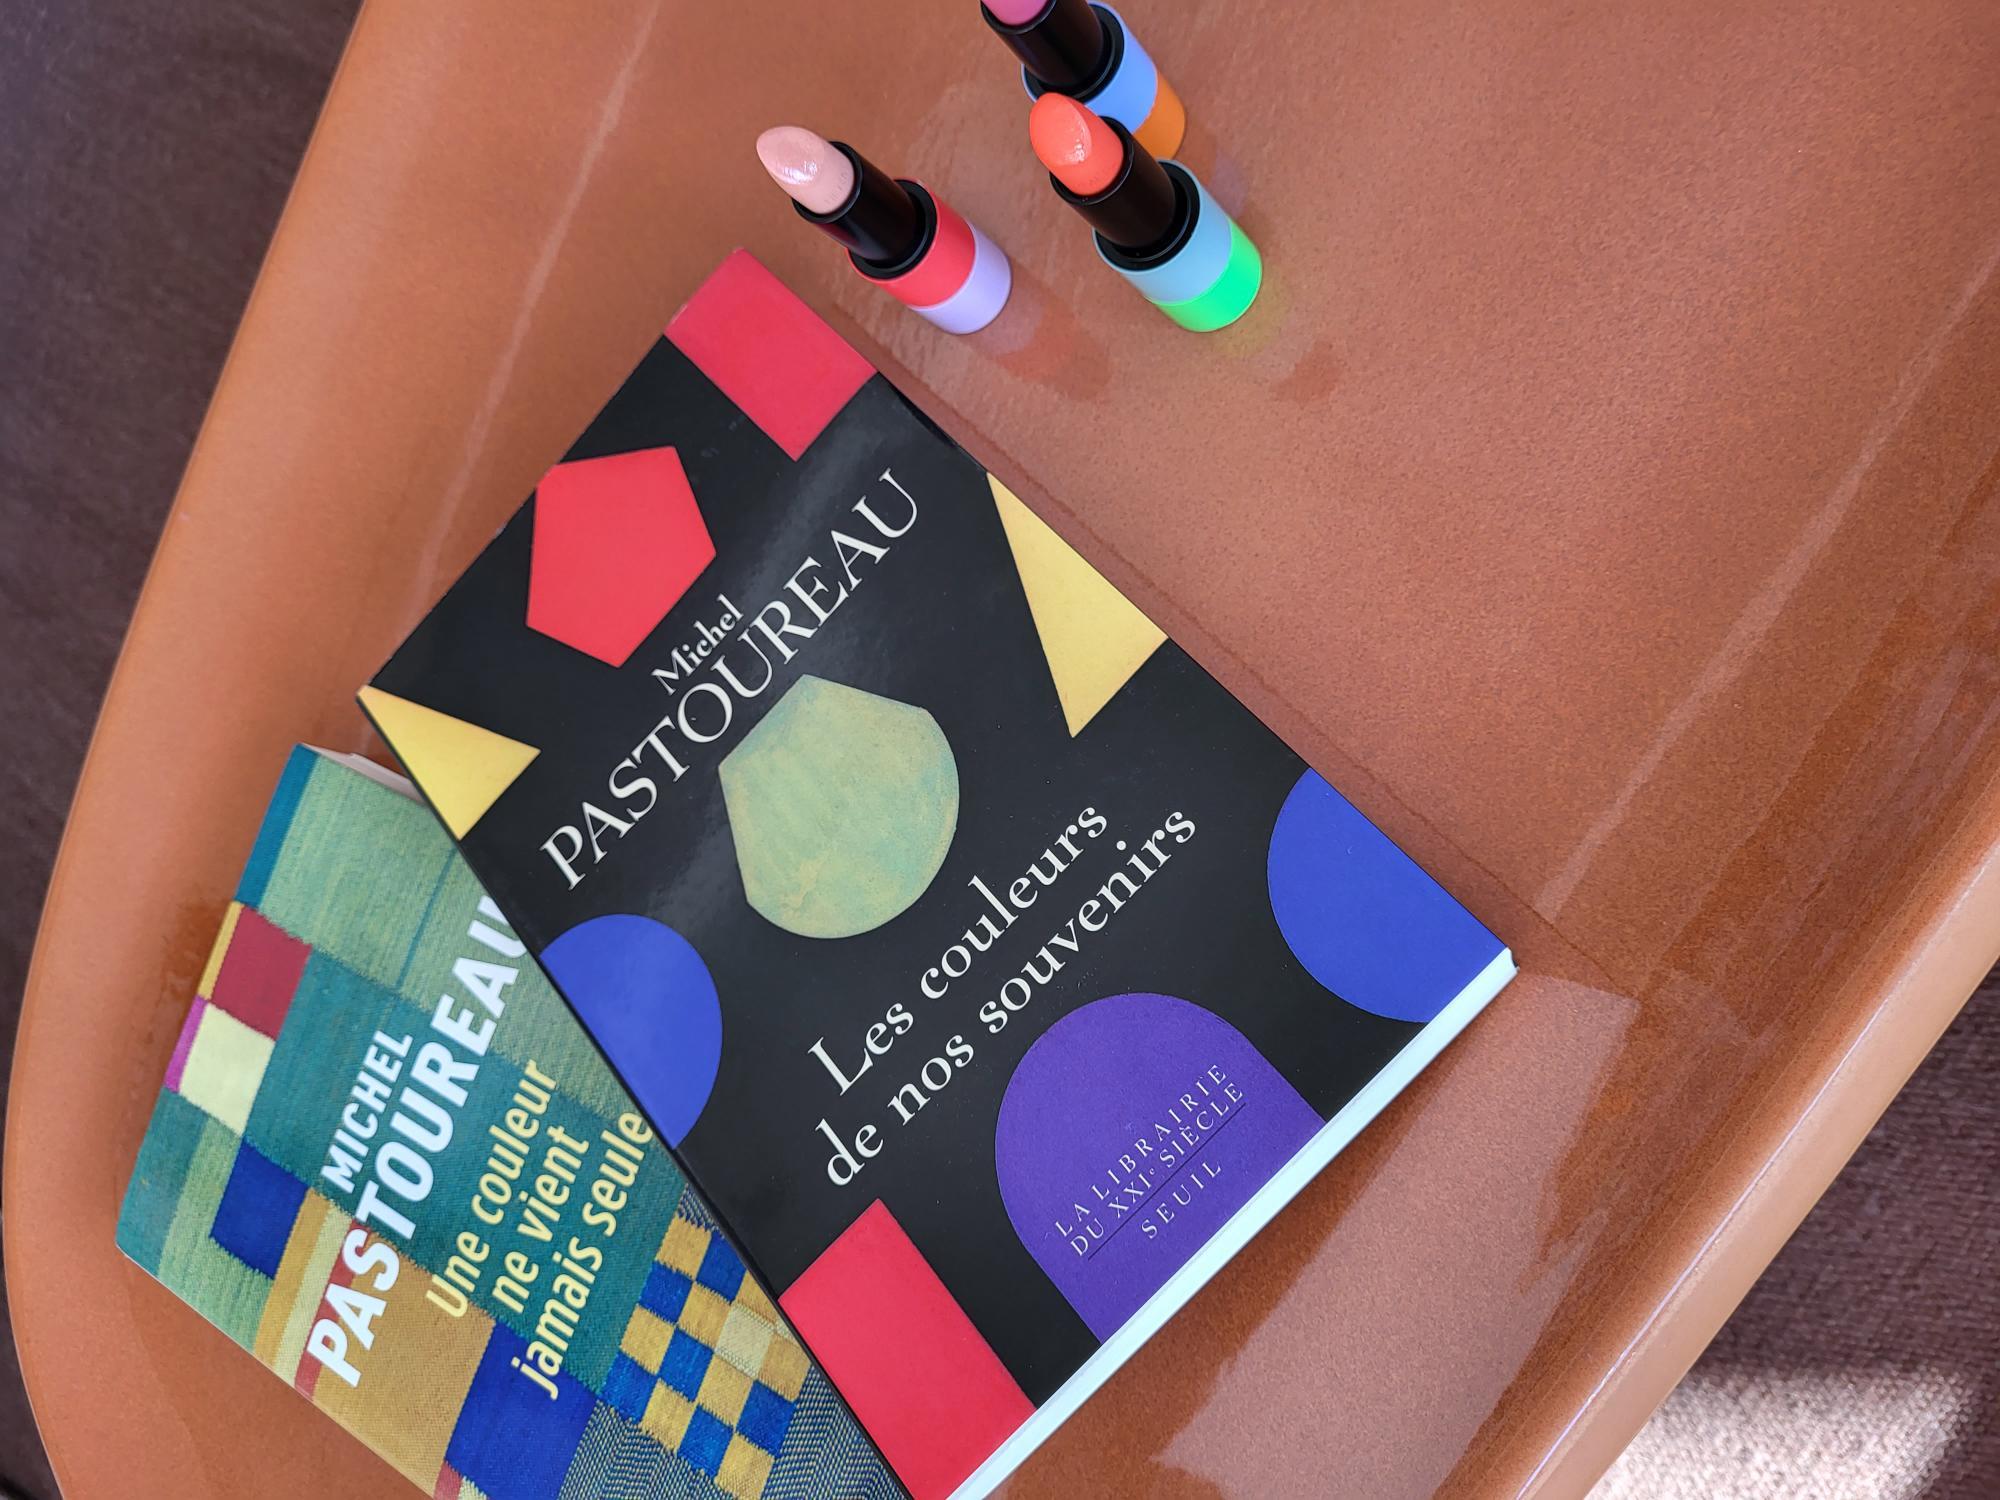 El libro "Los colores de nuestros recuerdos" de Michel Pastoureau junto con los icónicos Rouge de labios de Hermés.